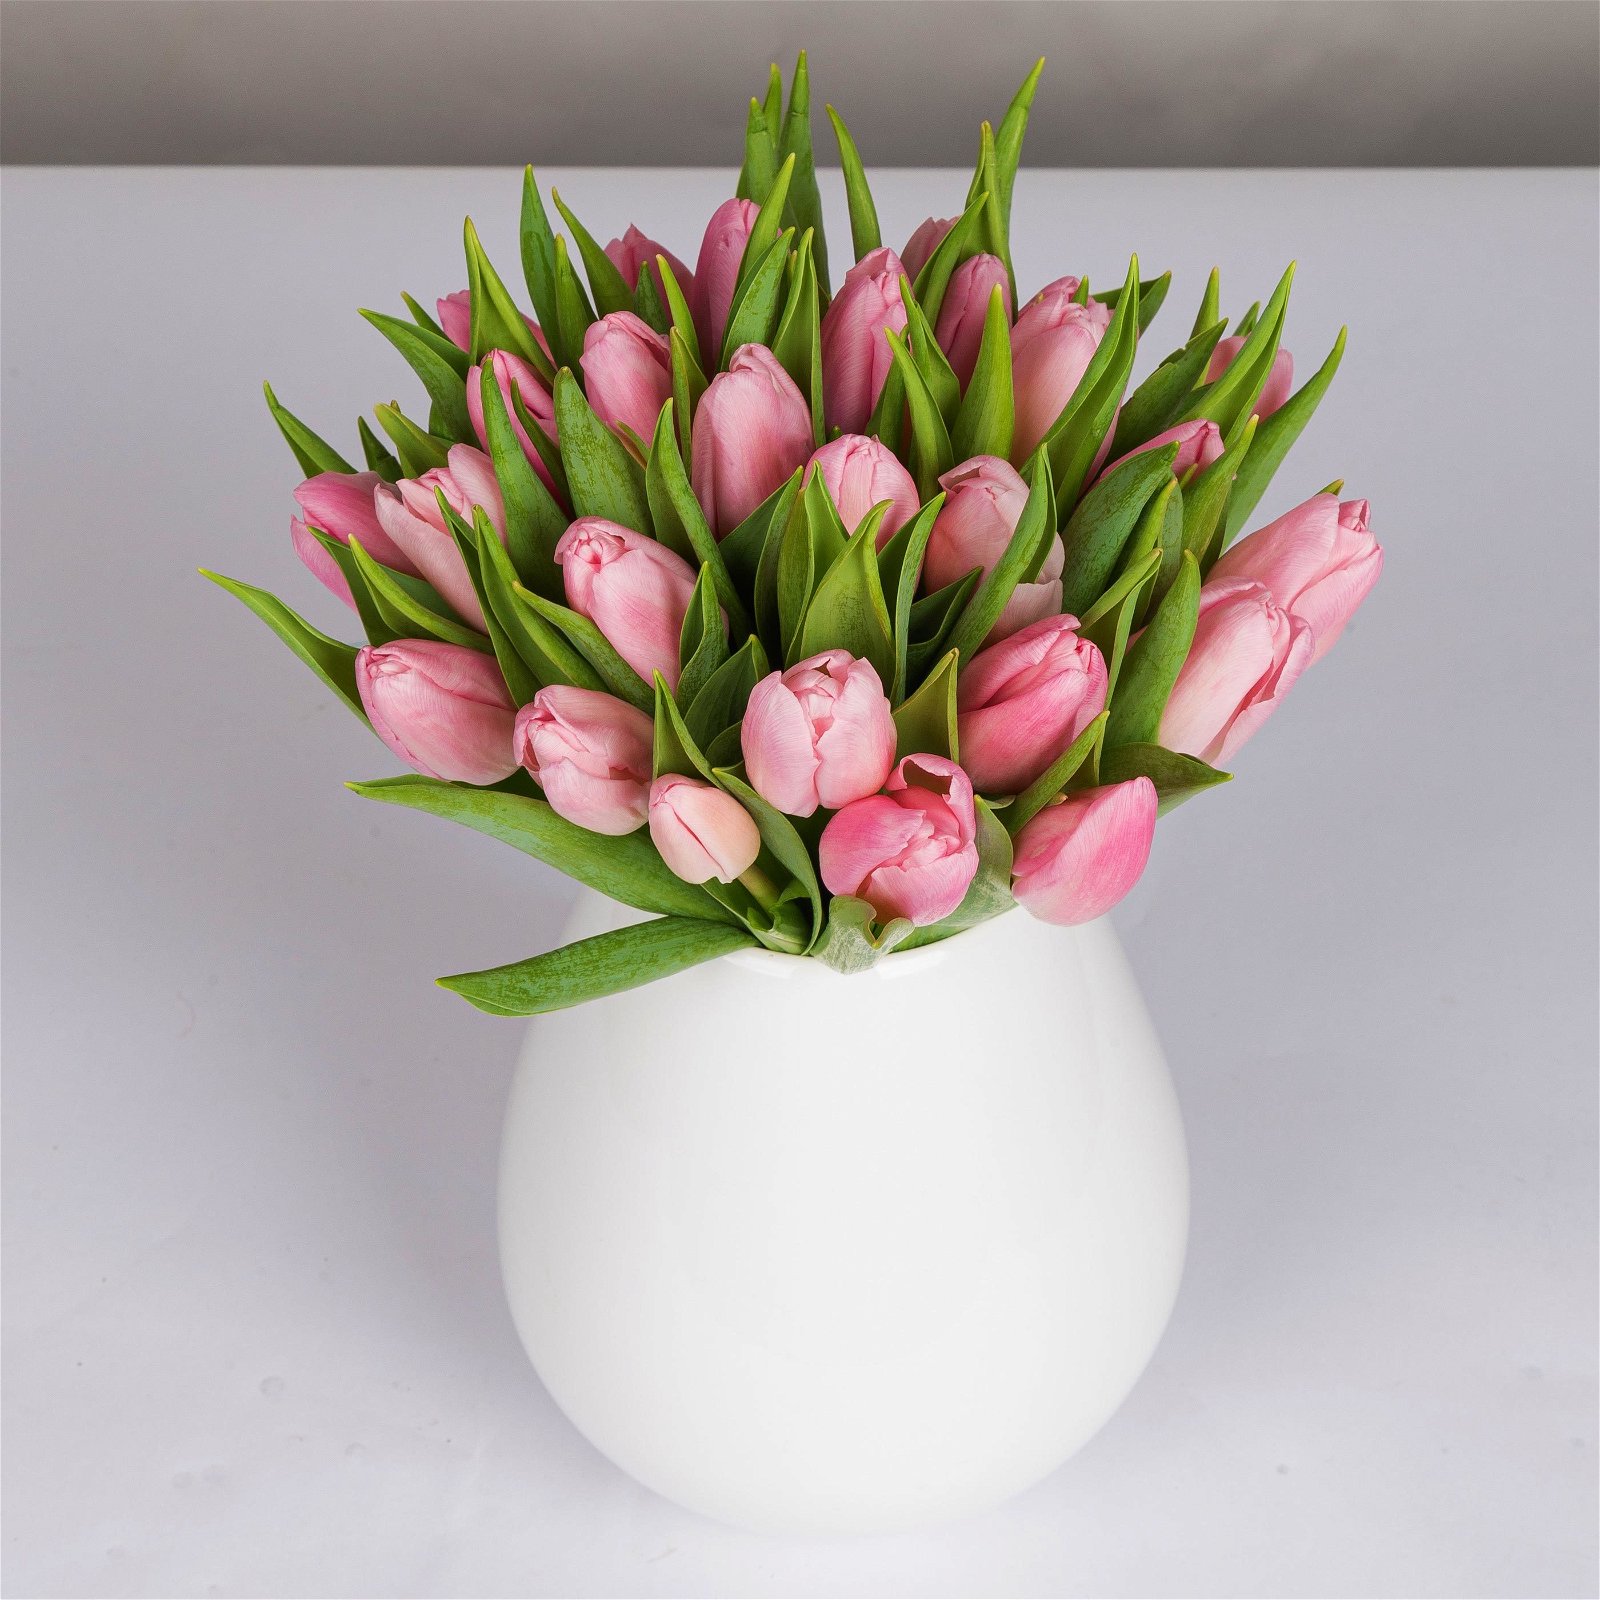 Blumenbund mit Tulpen, 30er-Bund, hellrosa, inkl. gratis Grußkarte